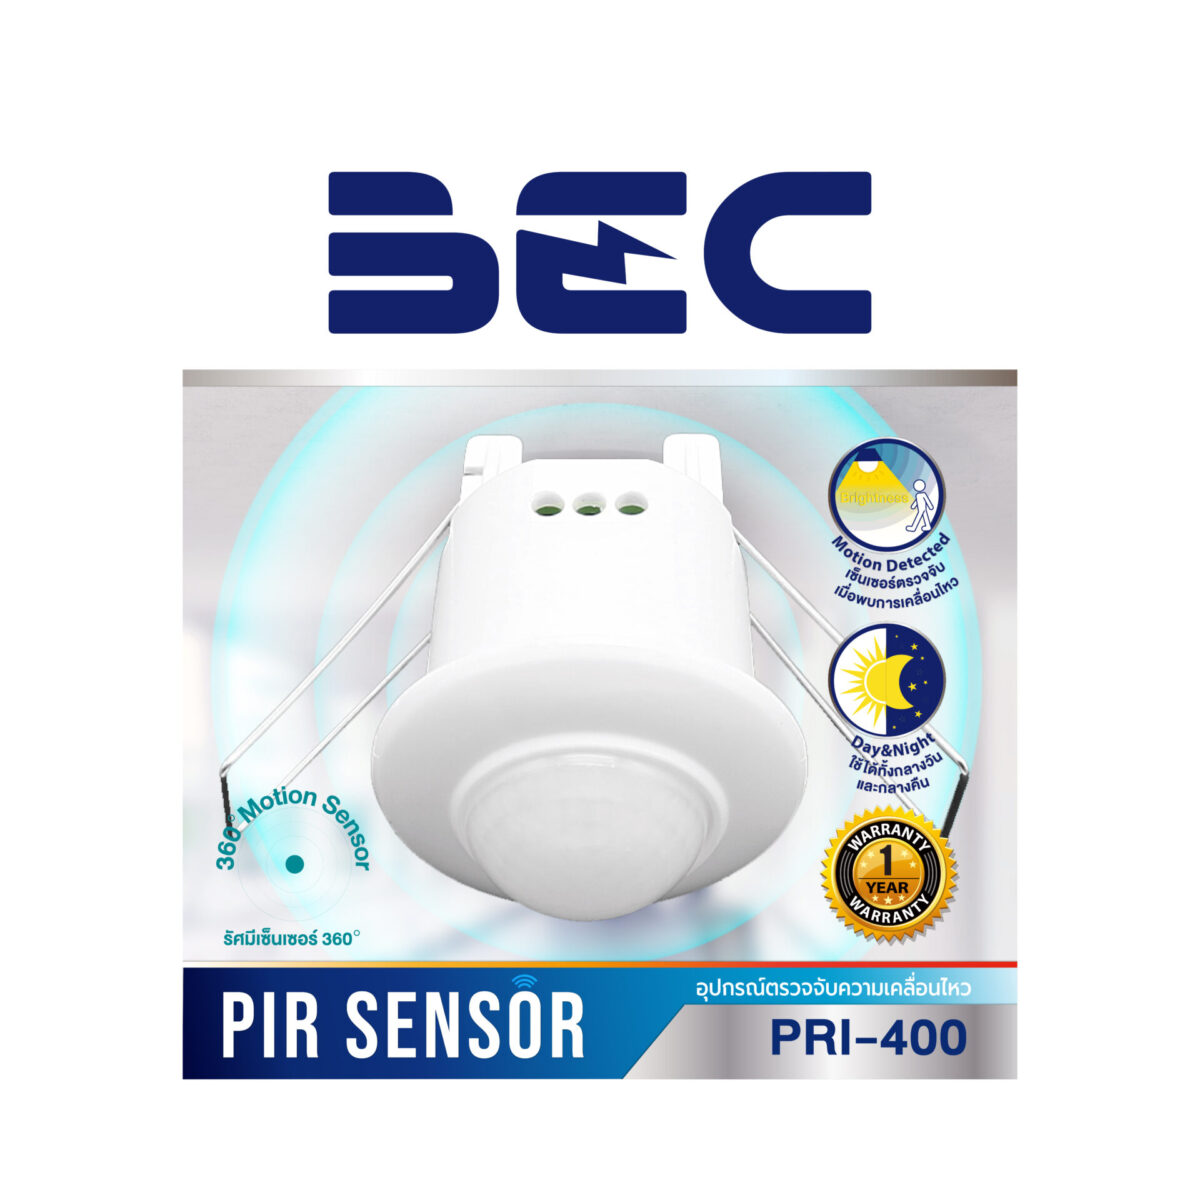 อุปกรณ์ตรวจจับความเคลื่อนไหวฝังเพดาน PIR Sensor รุ่น PRI-400